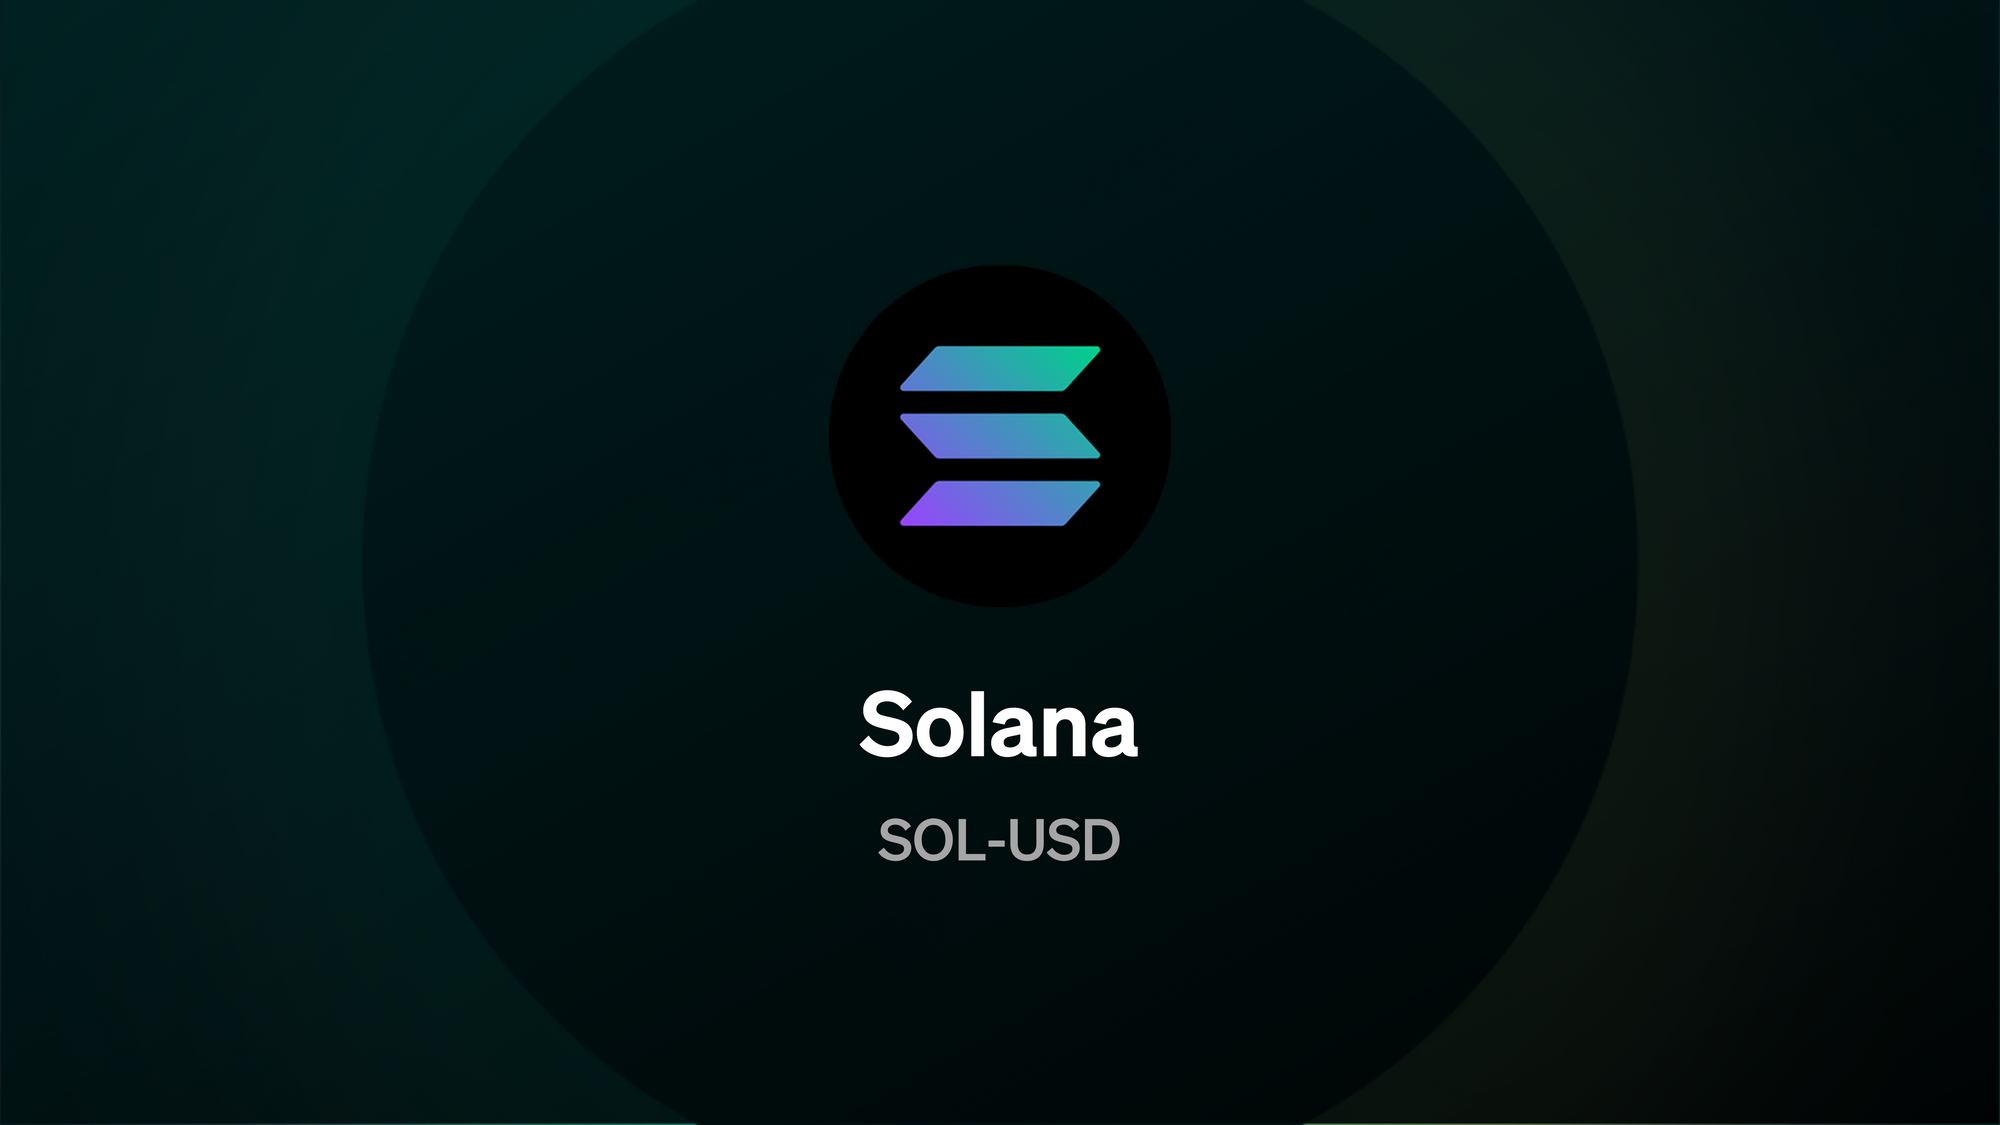 SOL options market now live